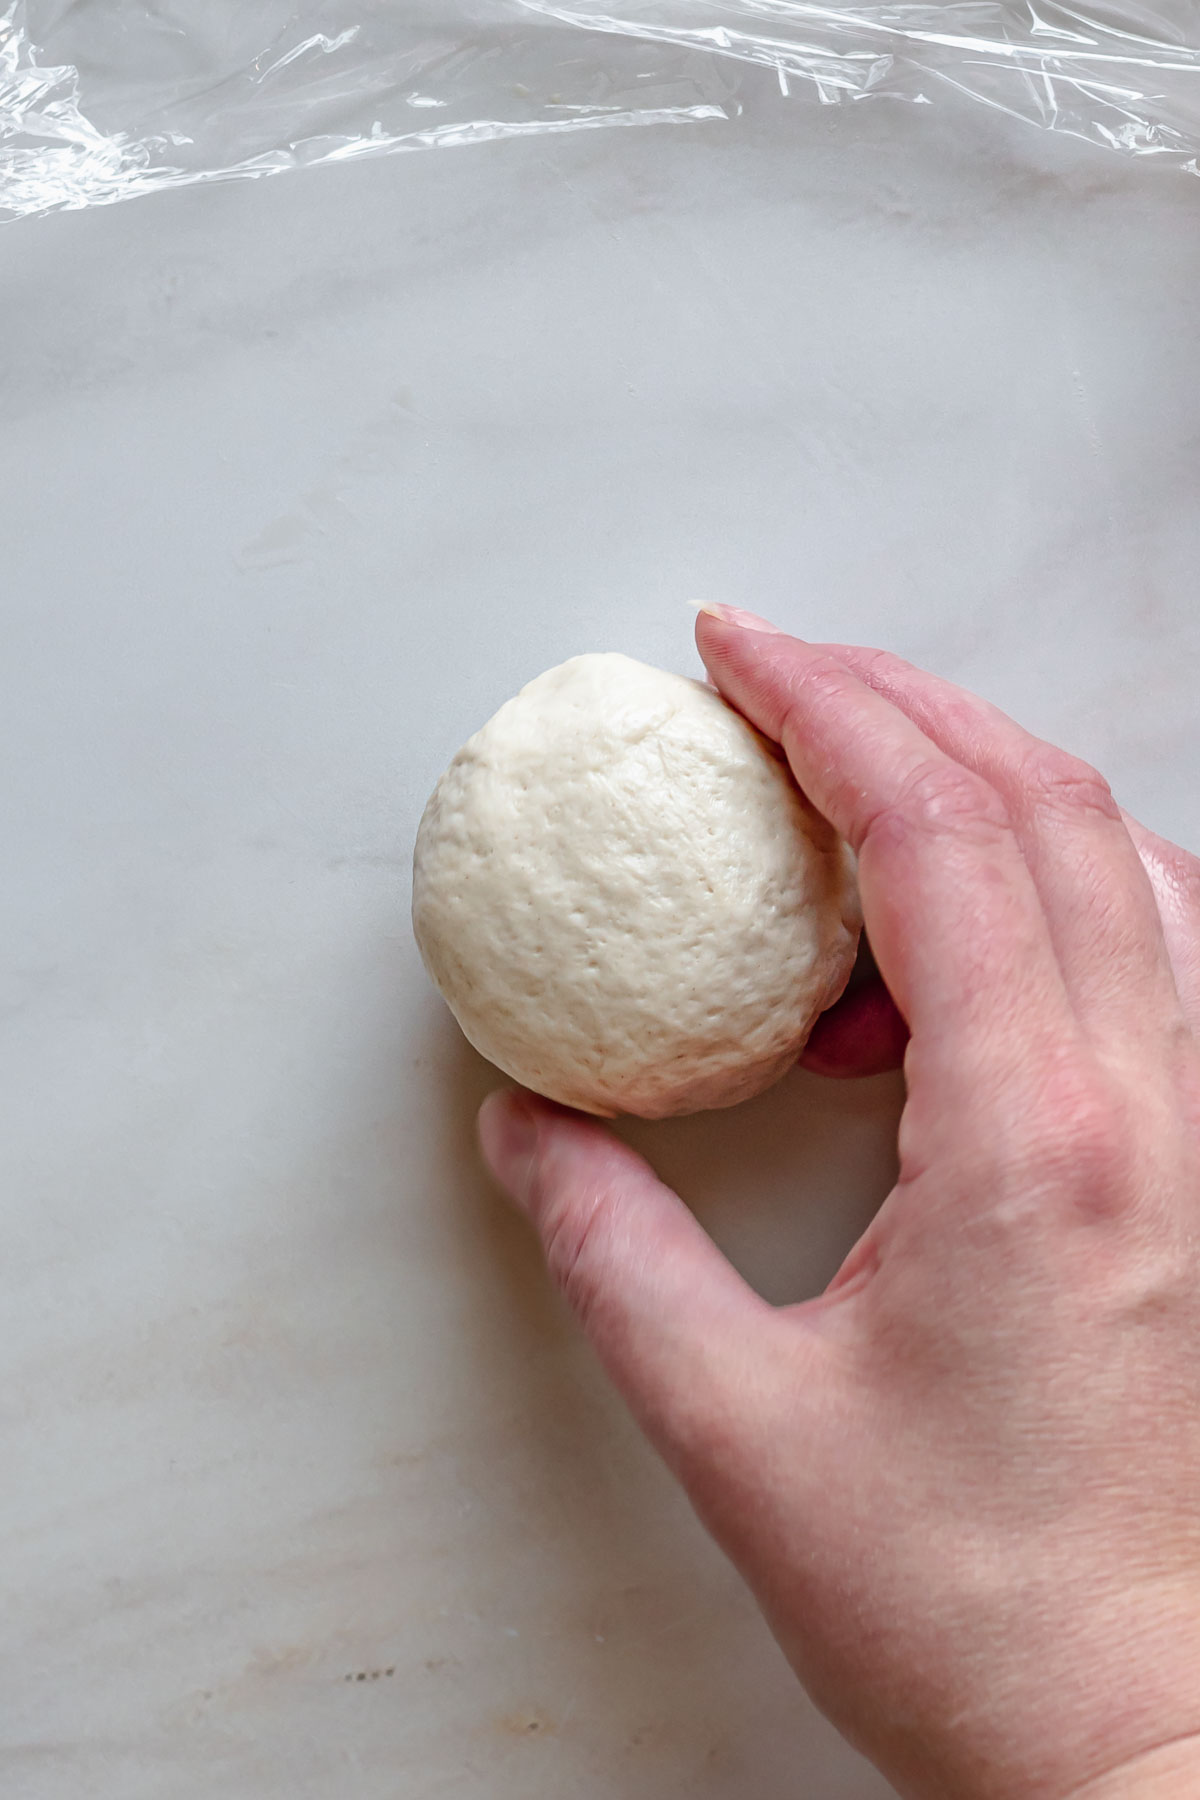 A hand rolls a ball of filled pretzel dough.